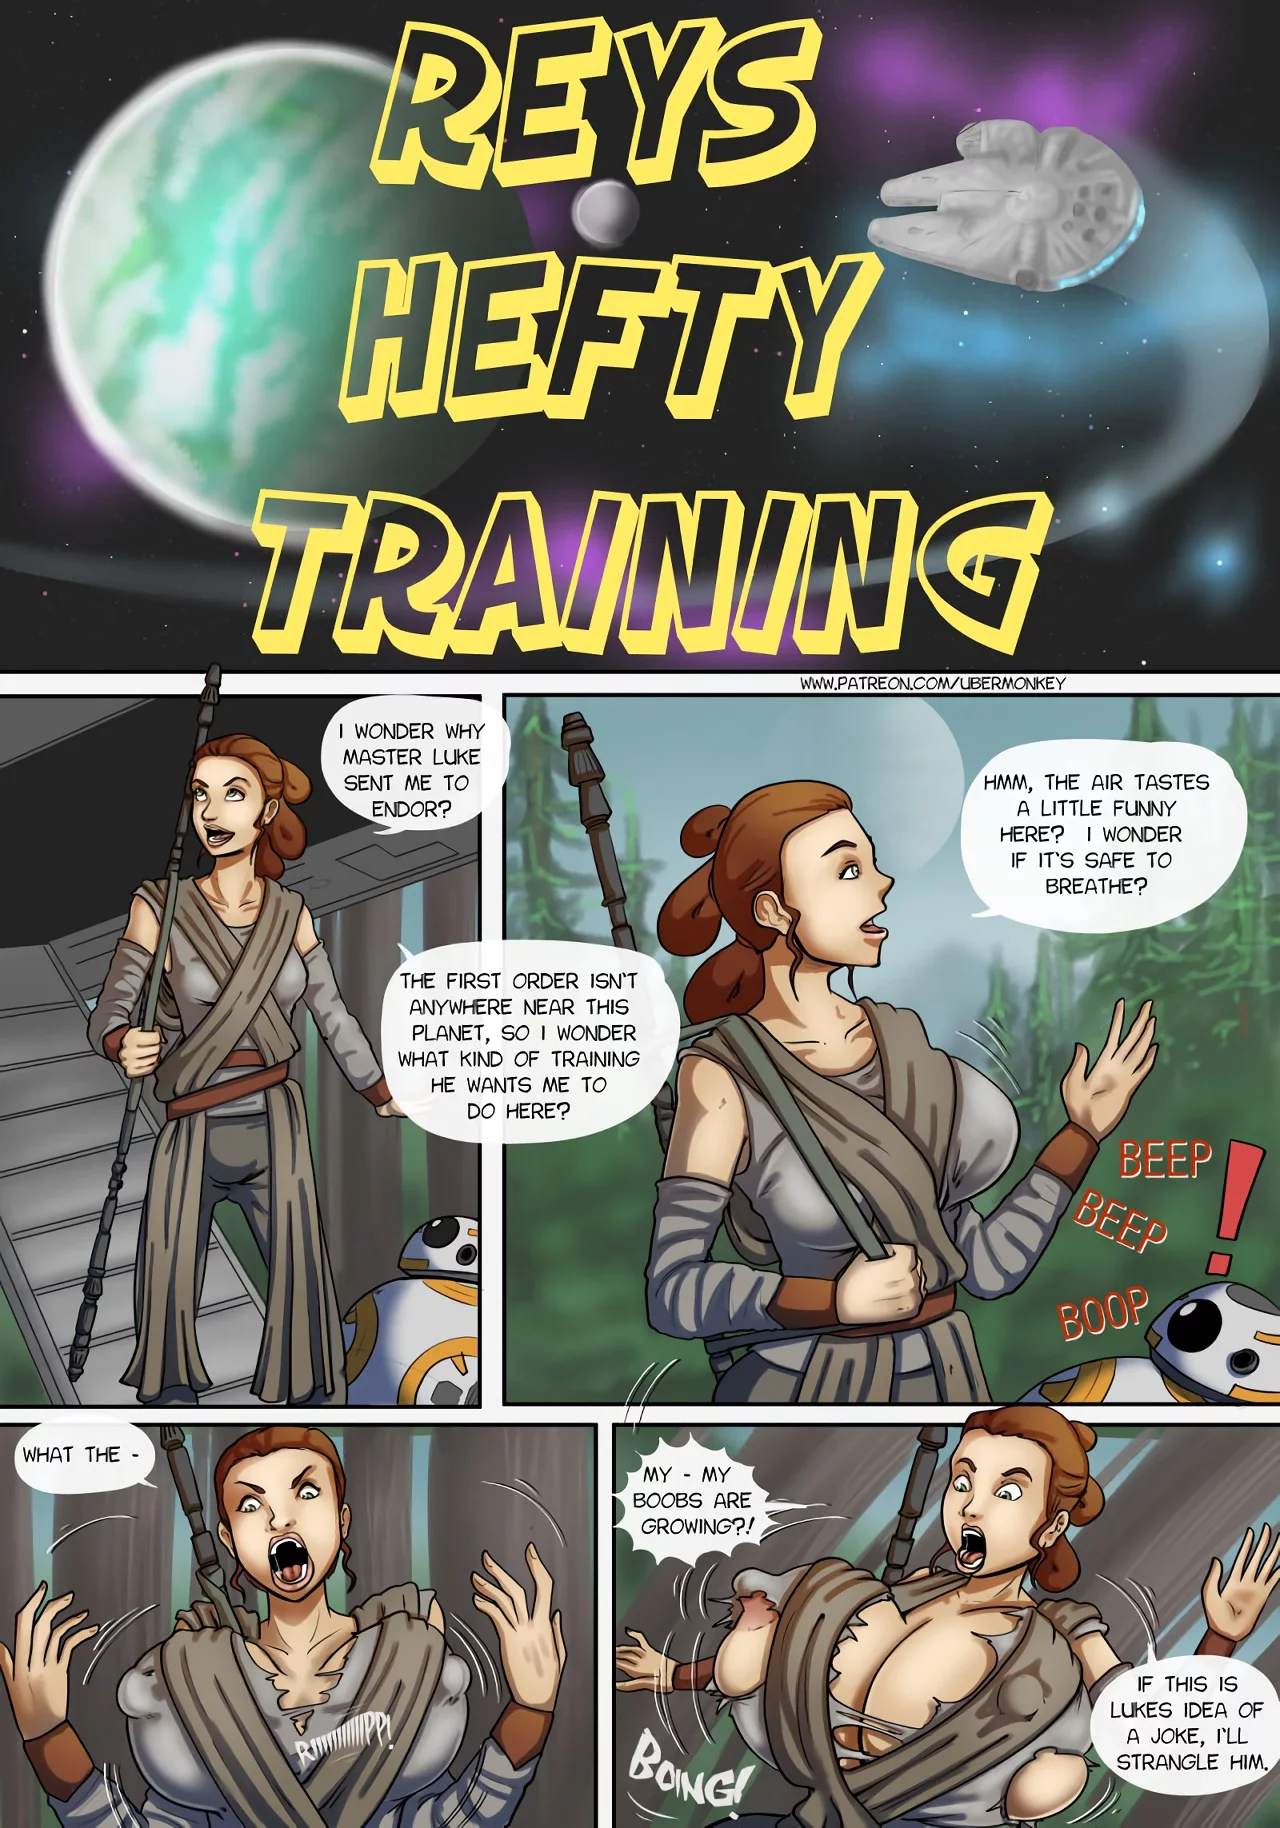 1280px x 1828px - UberMonkey Rey's Hefty Training (Star Wars) porn comic